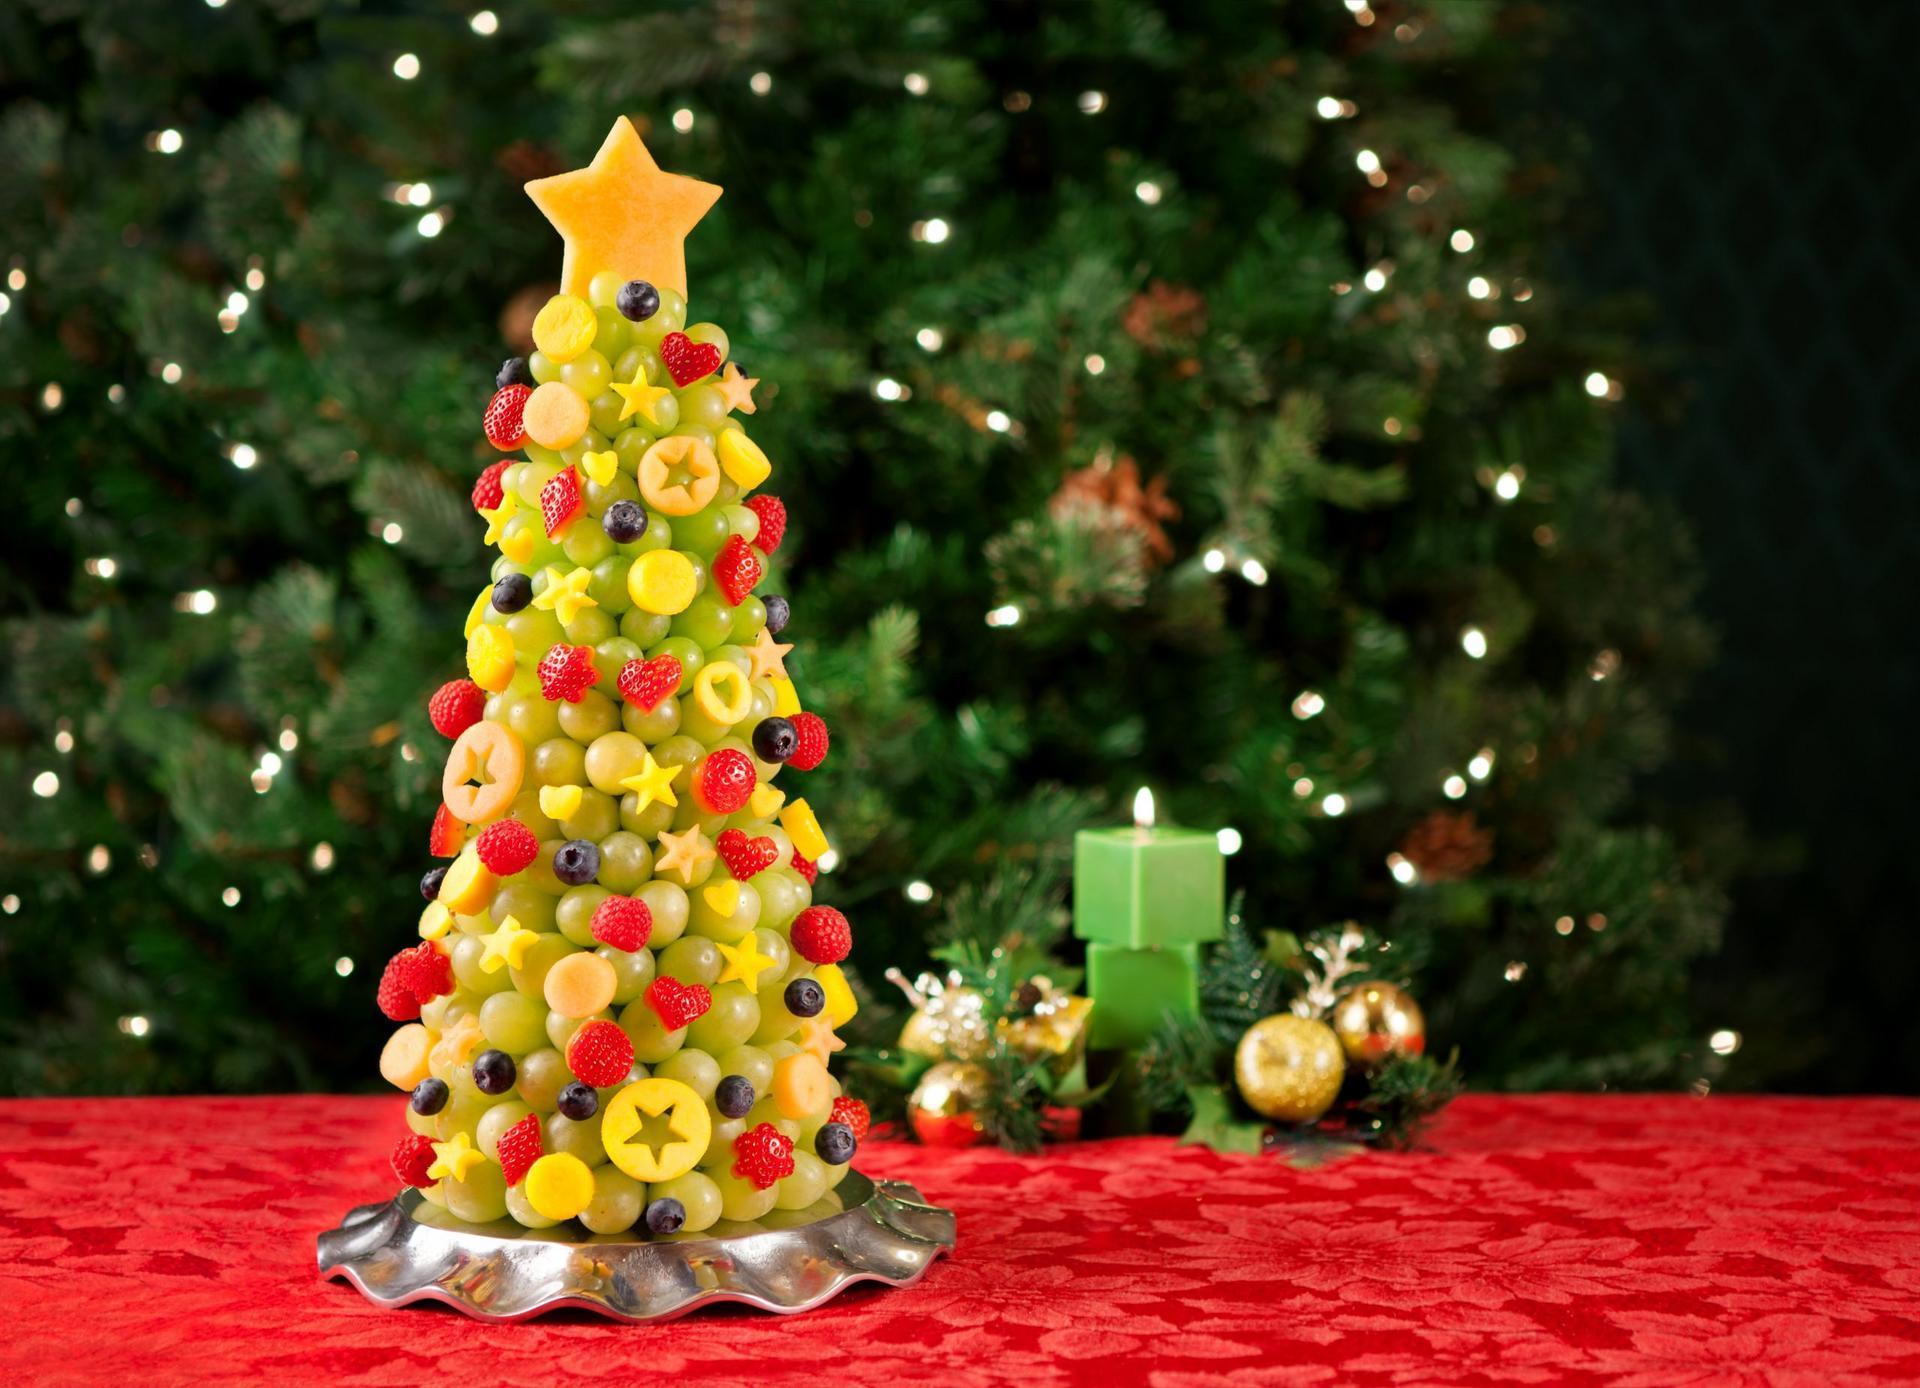 holidayfruits-scaled.jpg